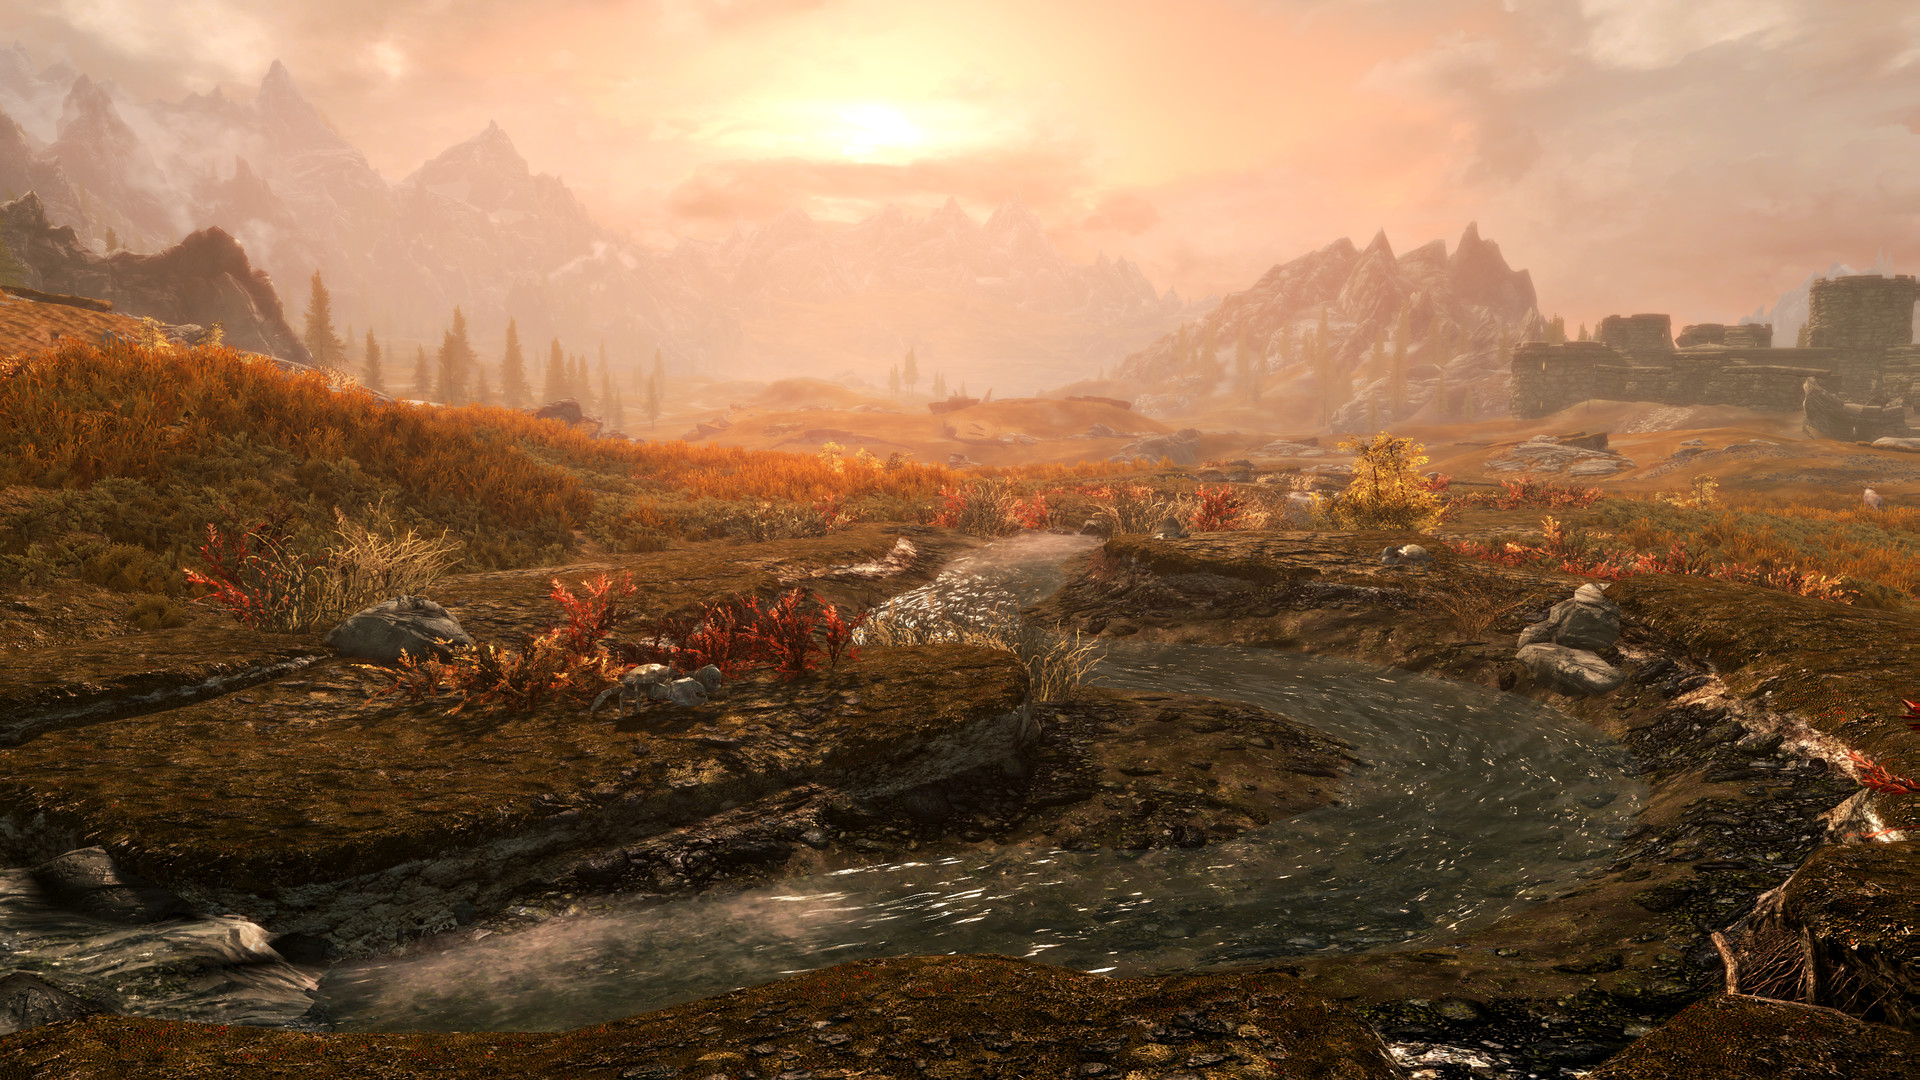 The Elder Scrolls V: Skyrim - Anniversary Upgrade DLC Steam Altergift